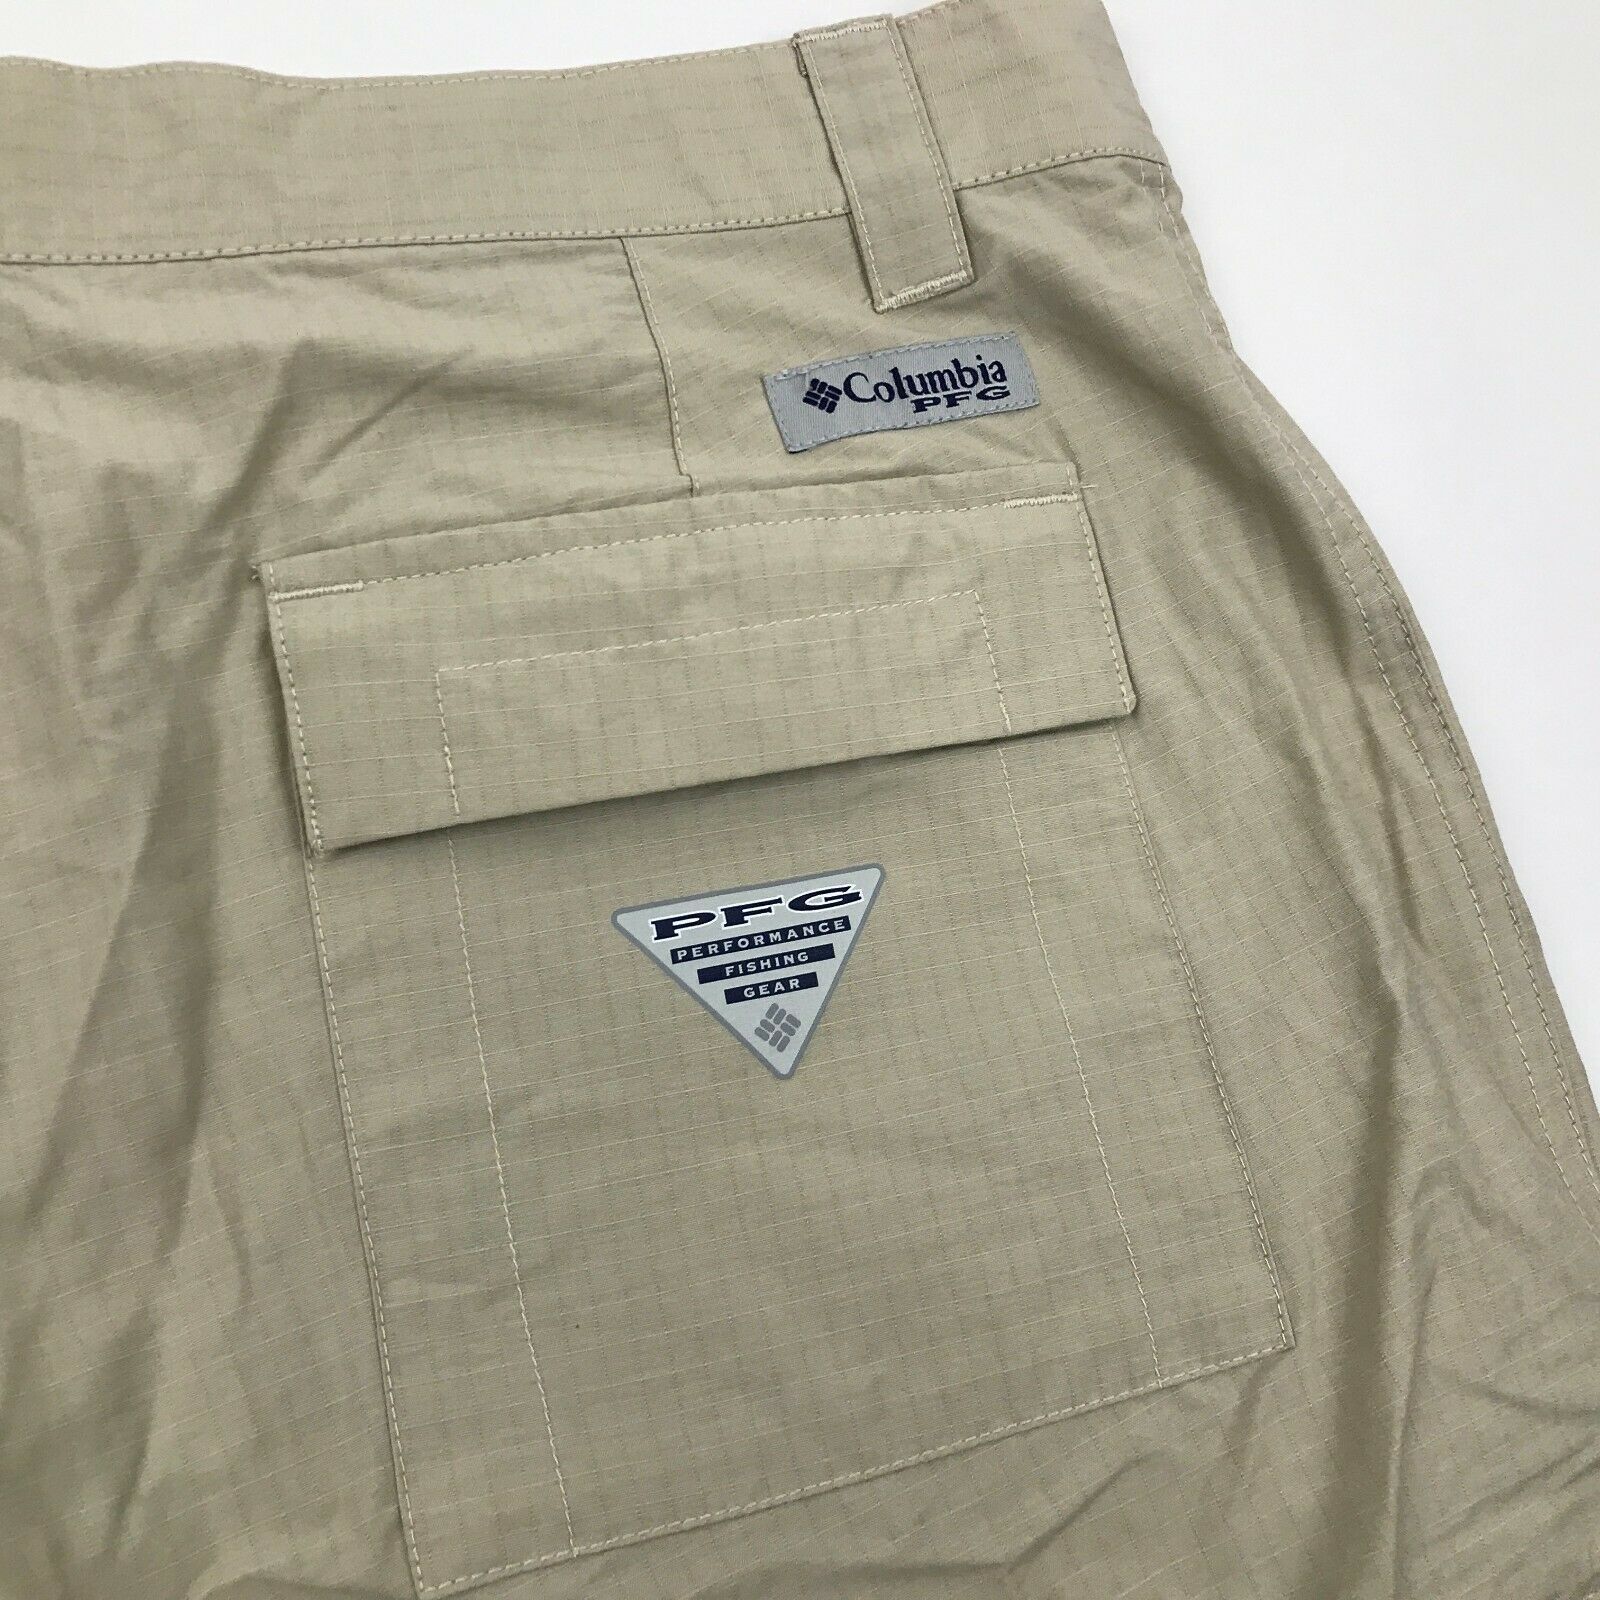 NEW Columbia PFG Shorts Men's Size 36 Waist Utility Pocket UPF 15 UV ...